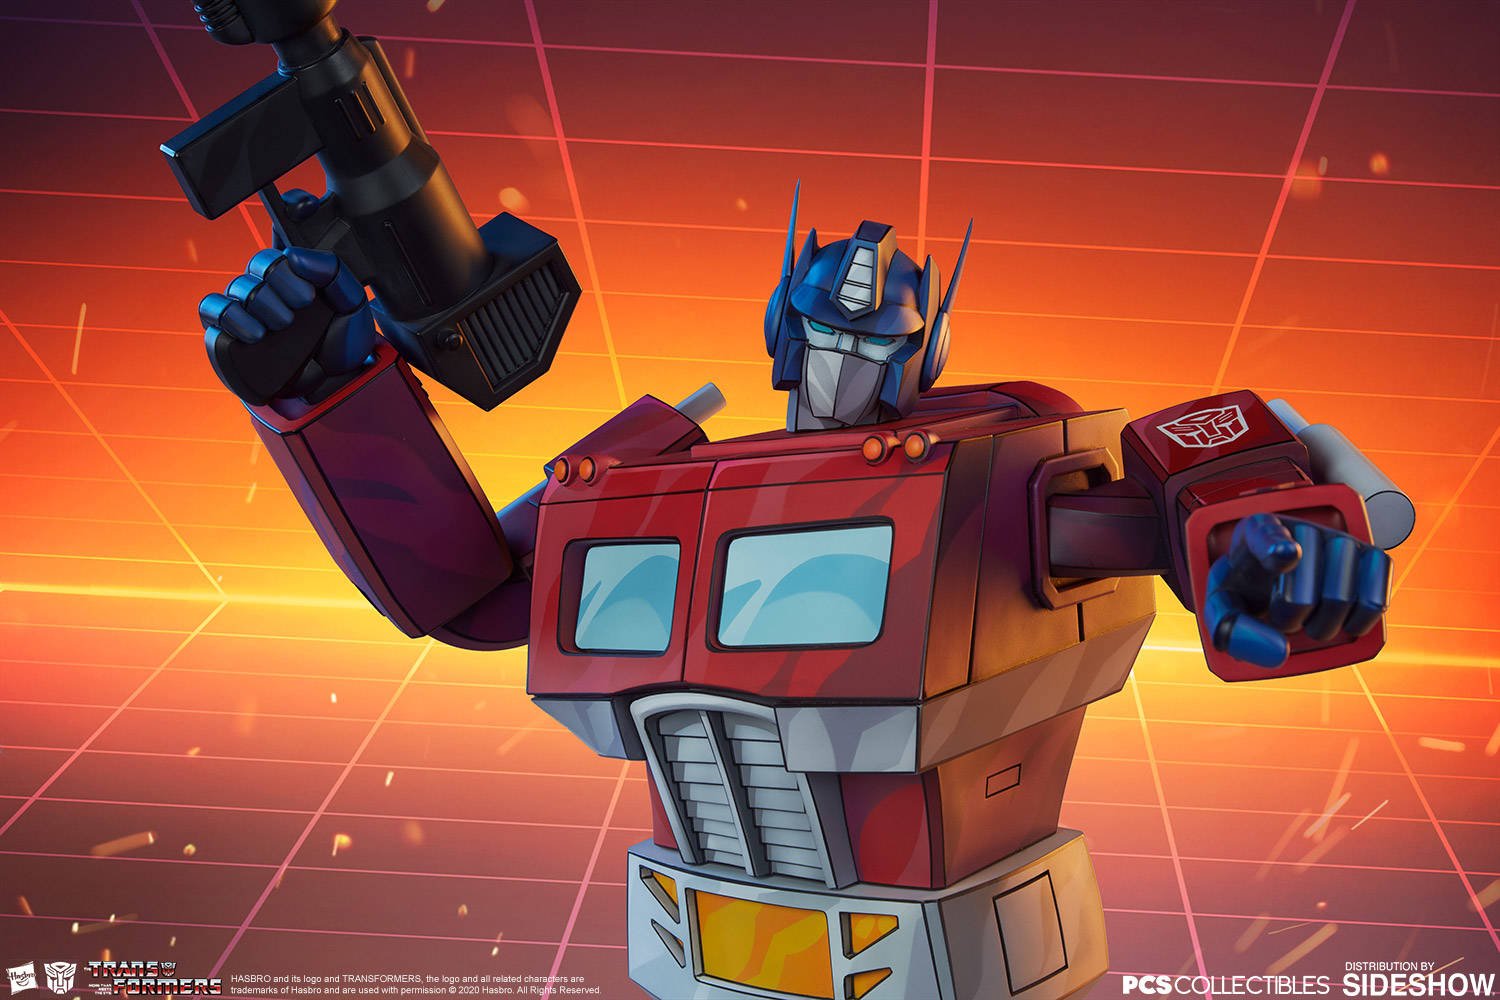 Immagine di Optimus Prime (Transformers) da PCS Collectibles